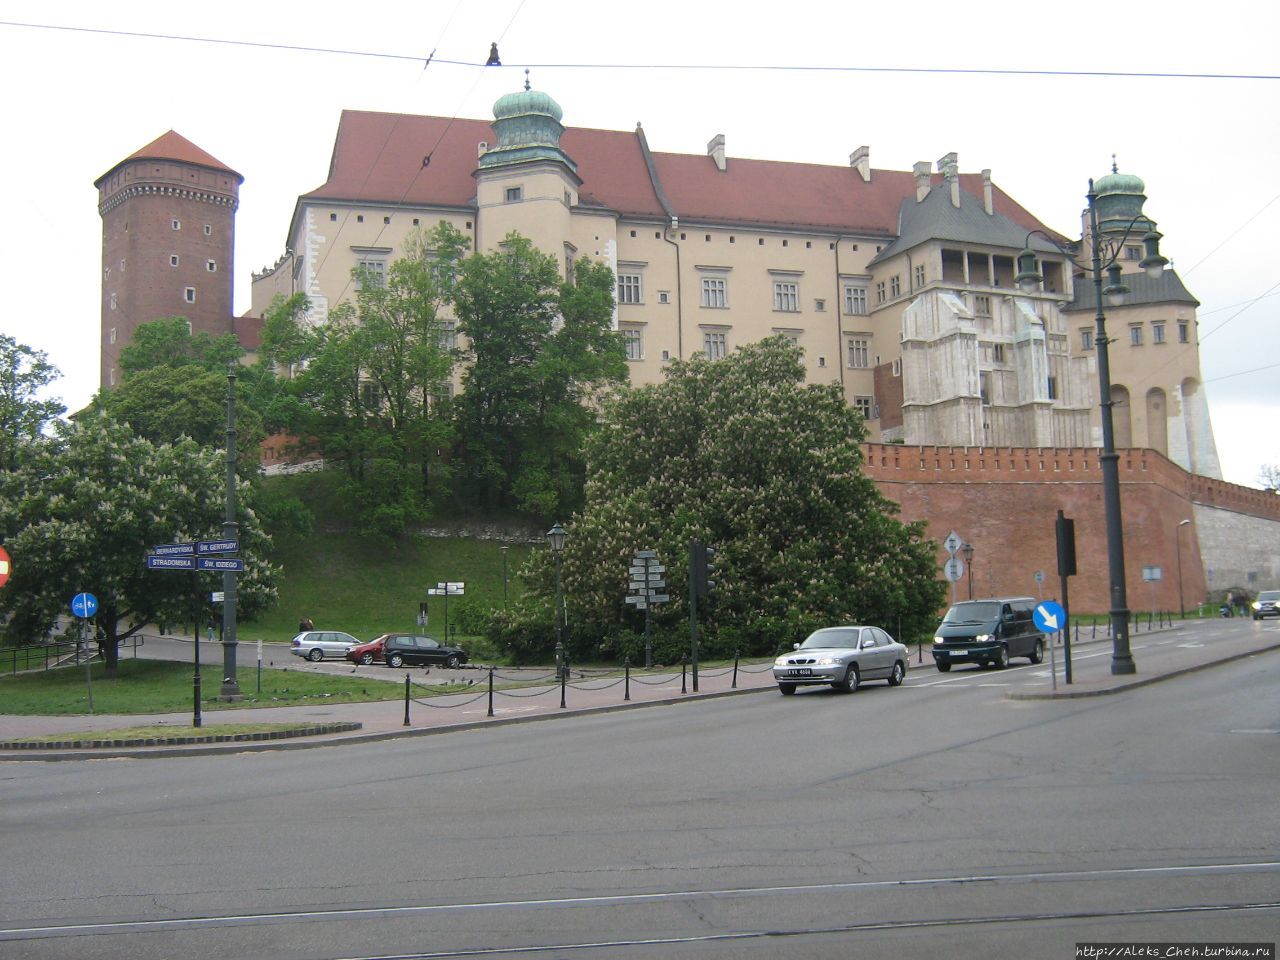 Вид на Замок с города Краков, Польша